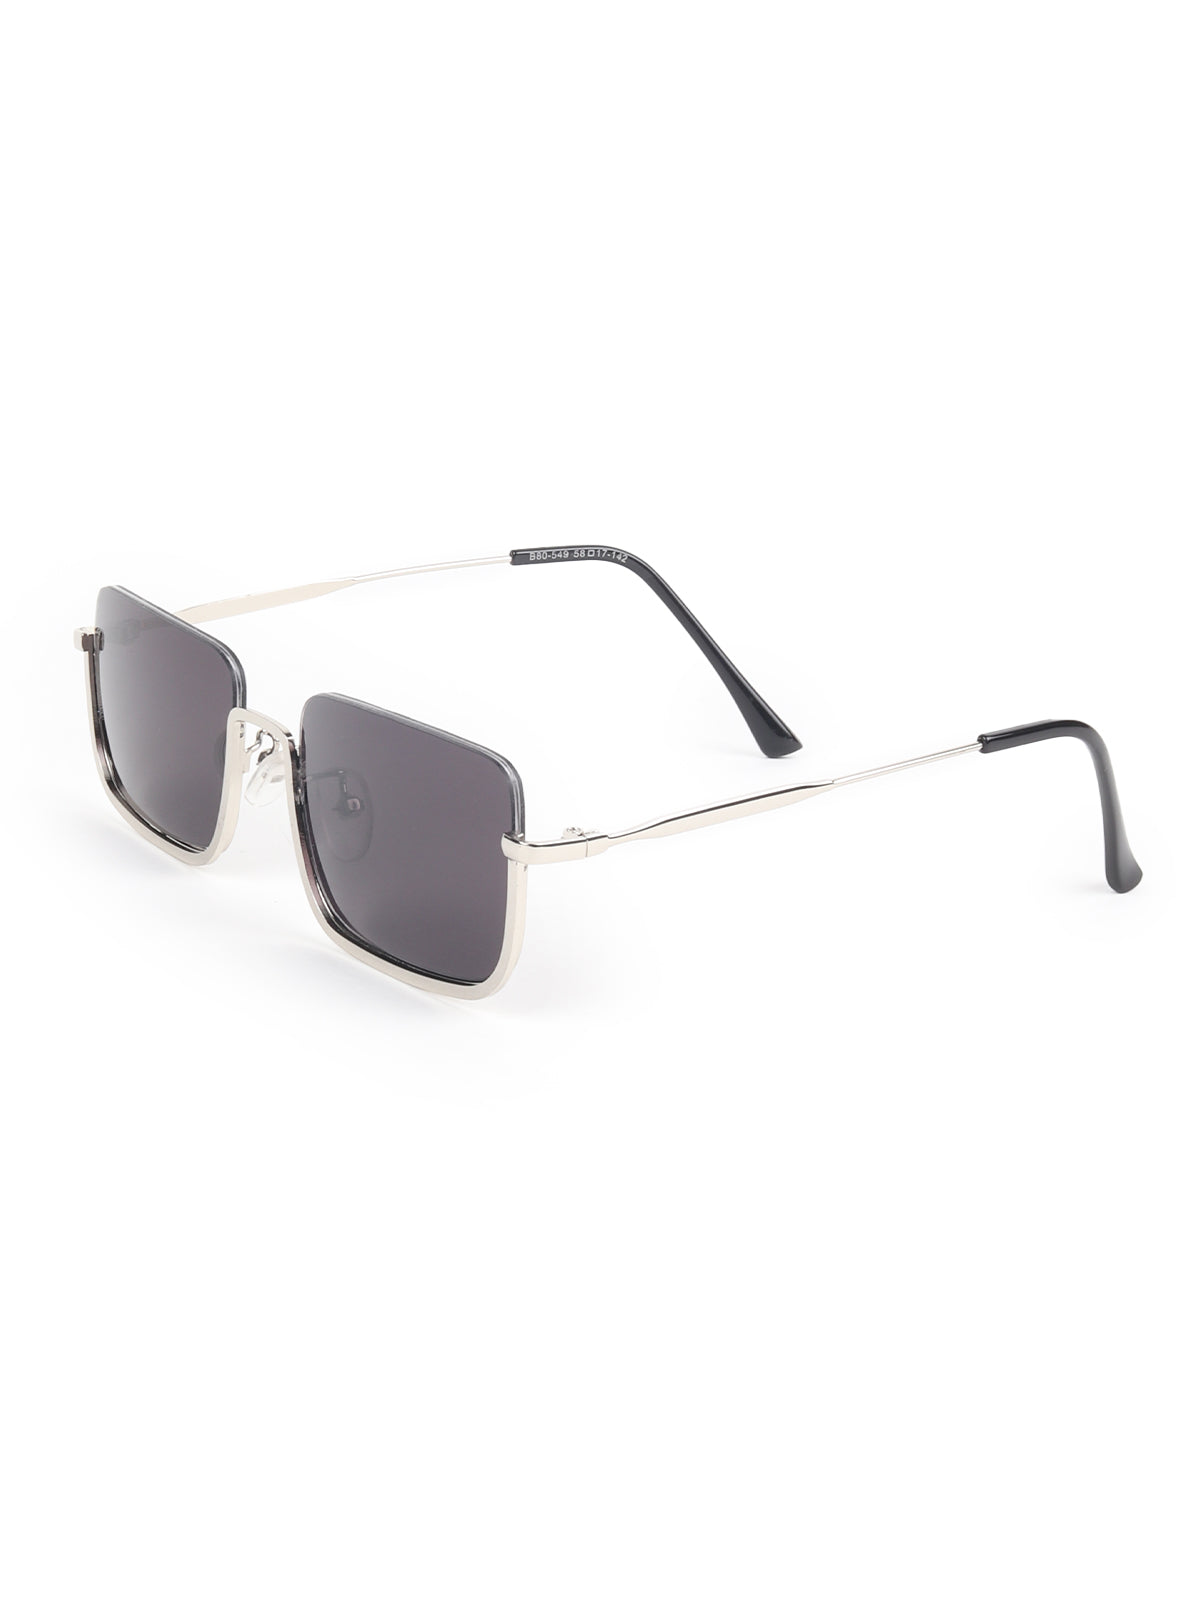 Odette Black Acrylic Rectangular Sunglasses for Women